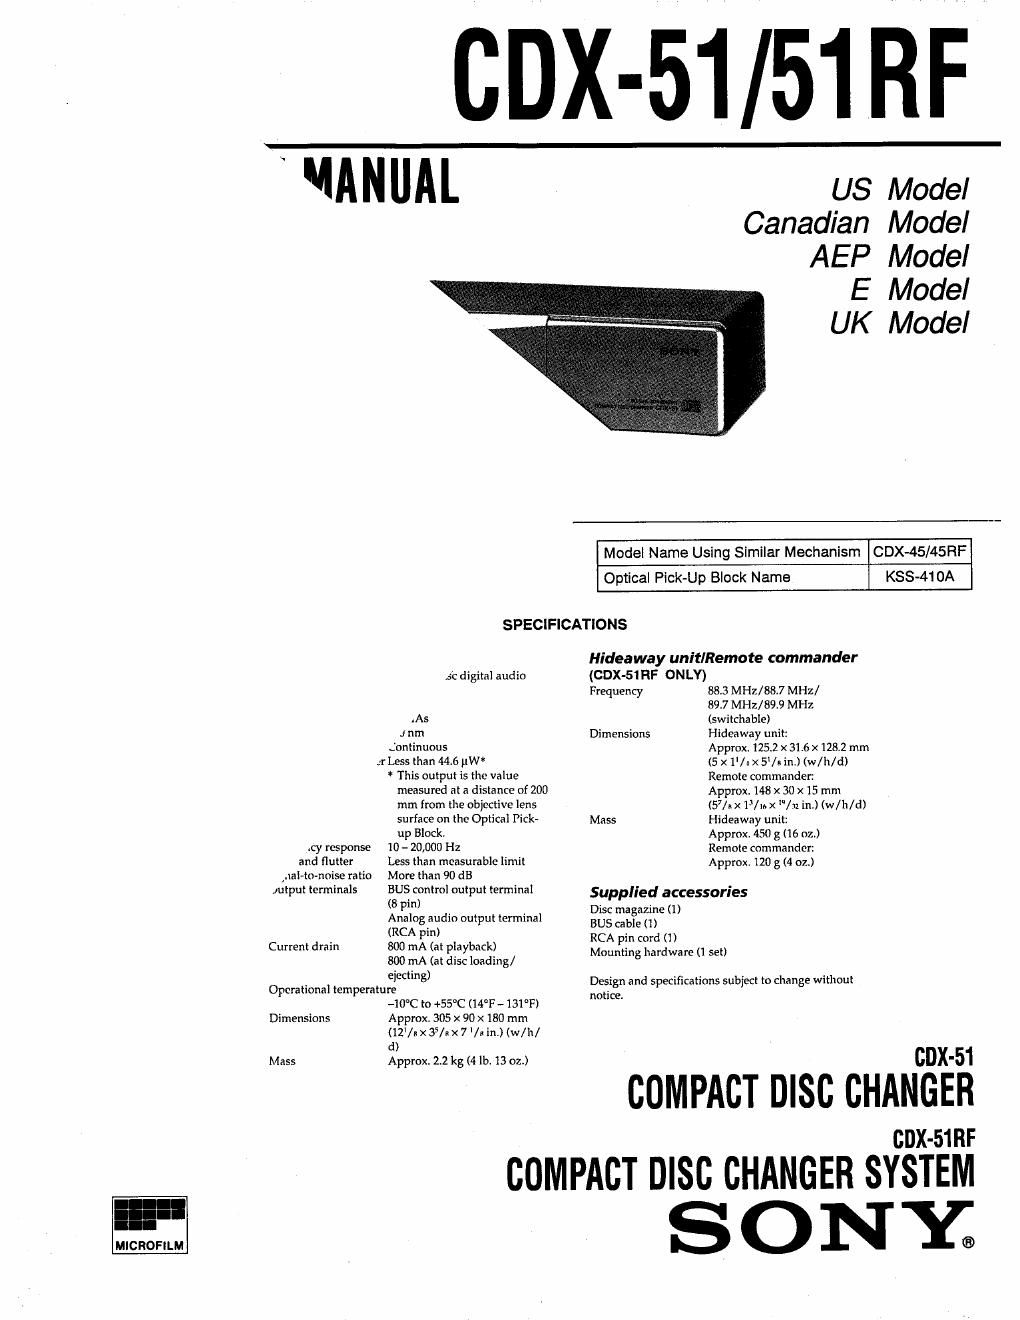 sony cdx 51 service manual